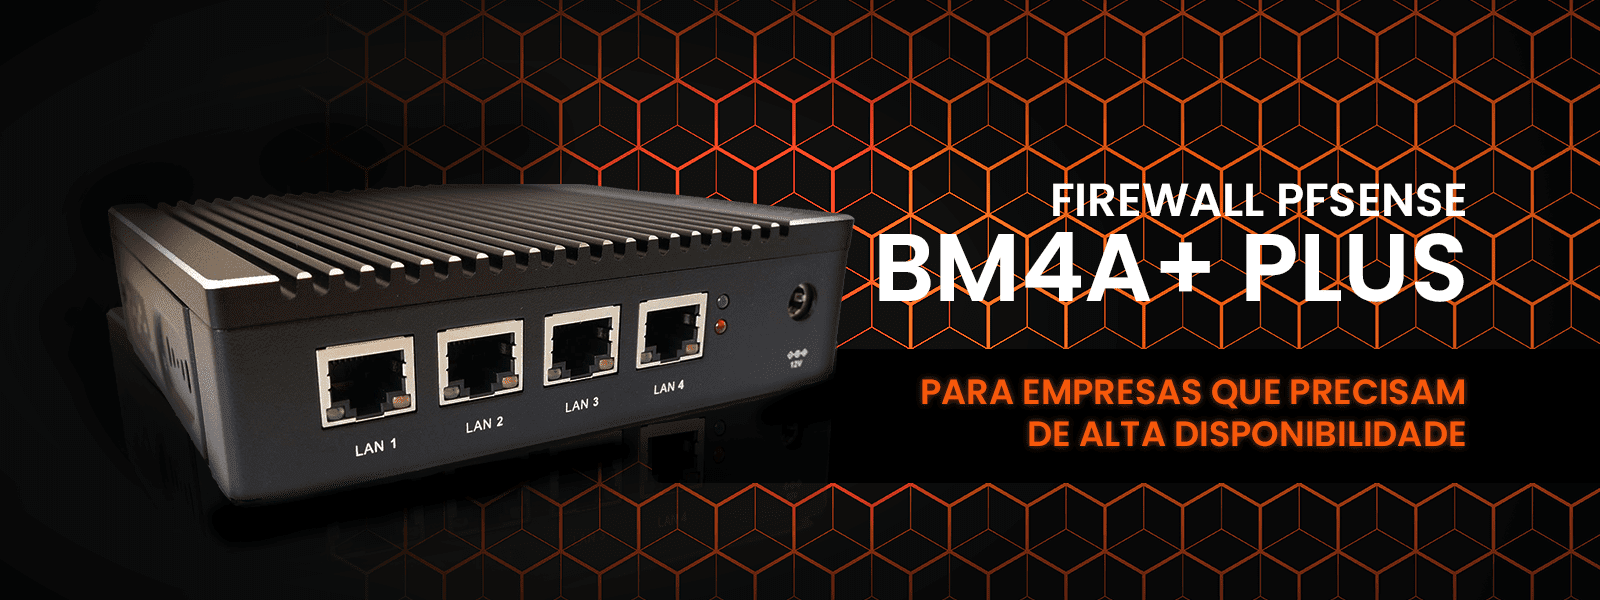 banner-appliance-firewall-bm4a-traseira